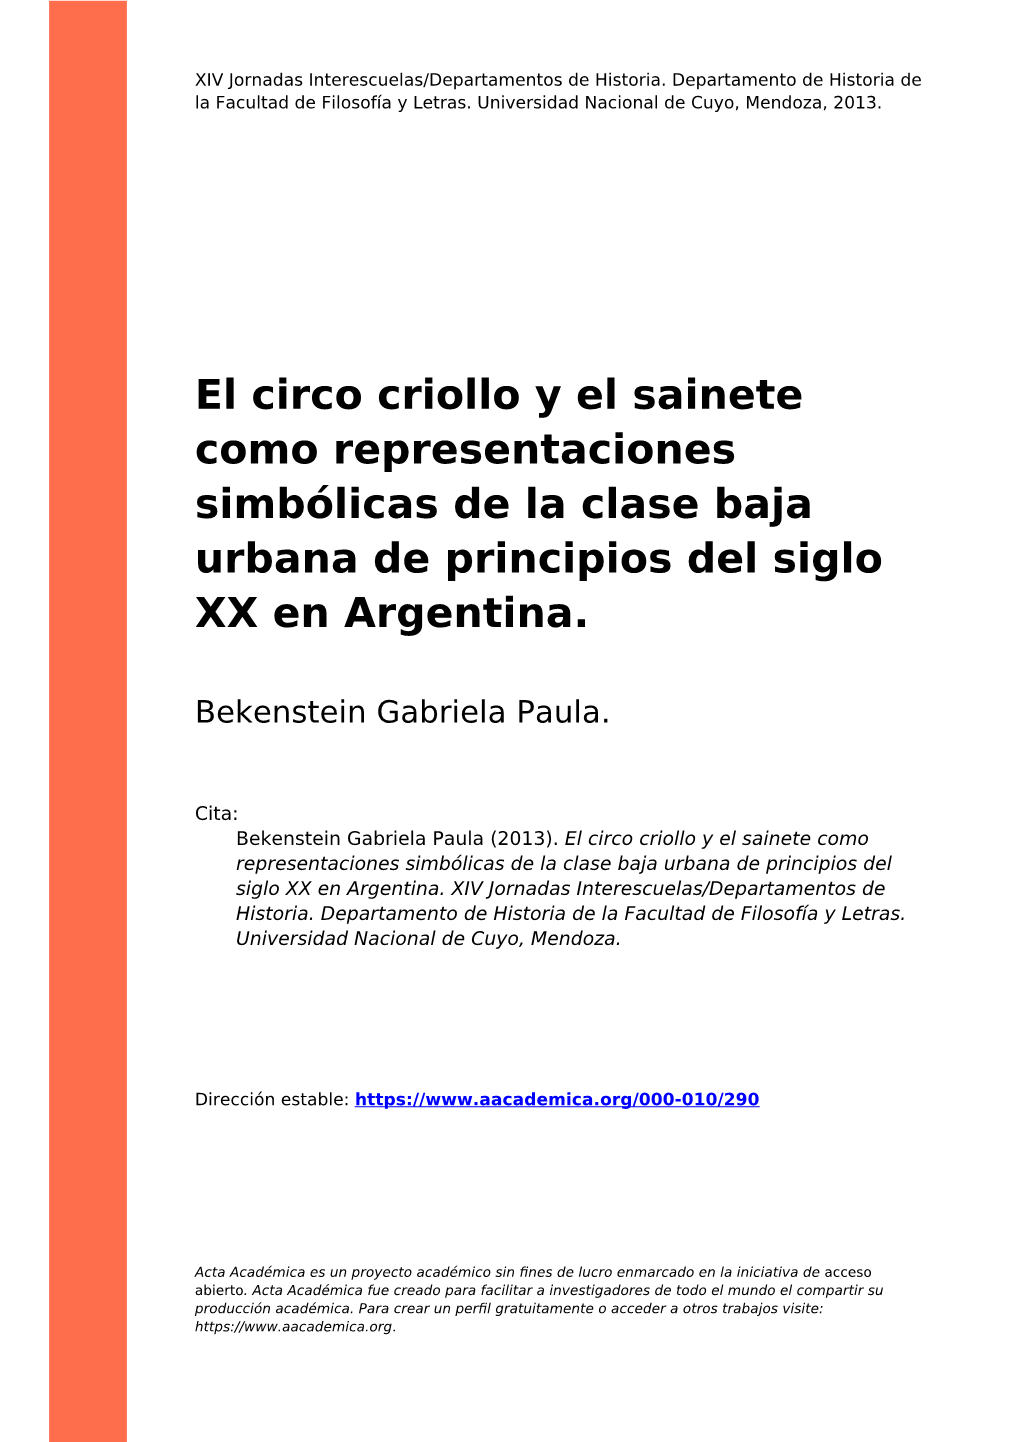 El Circo Criollo Y El Sainete Como Representaciones Simbólicas De La Clase Baja Urbana De Principios Del Siglo XX En Argentina